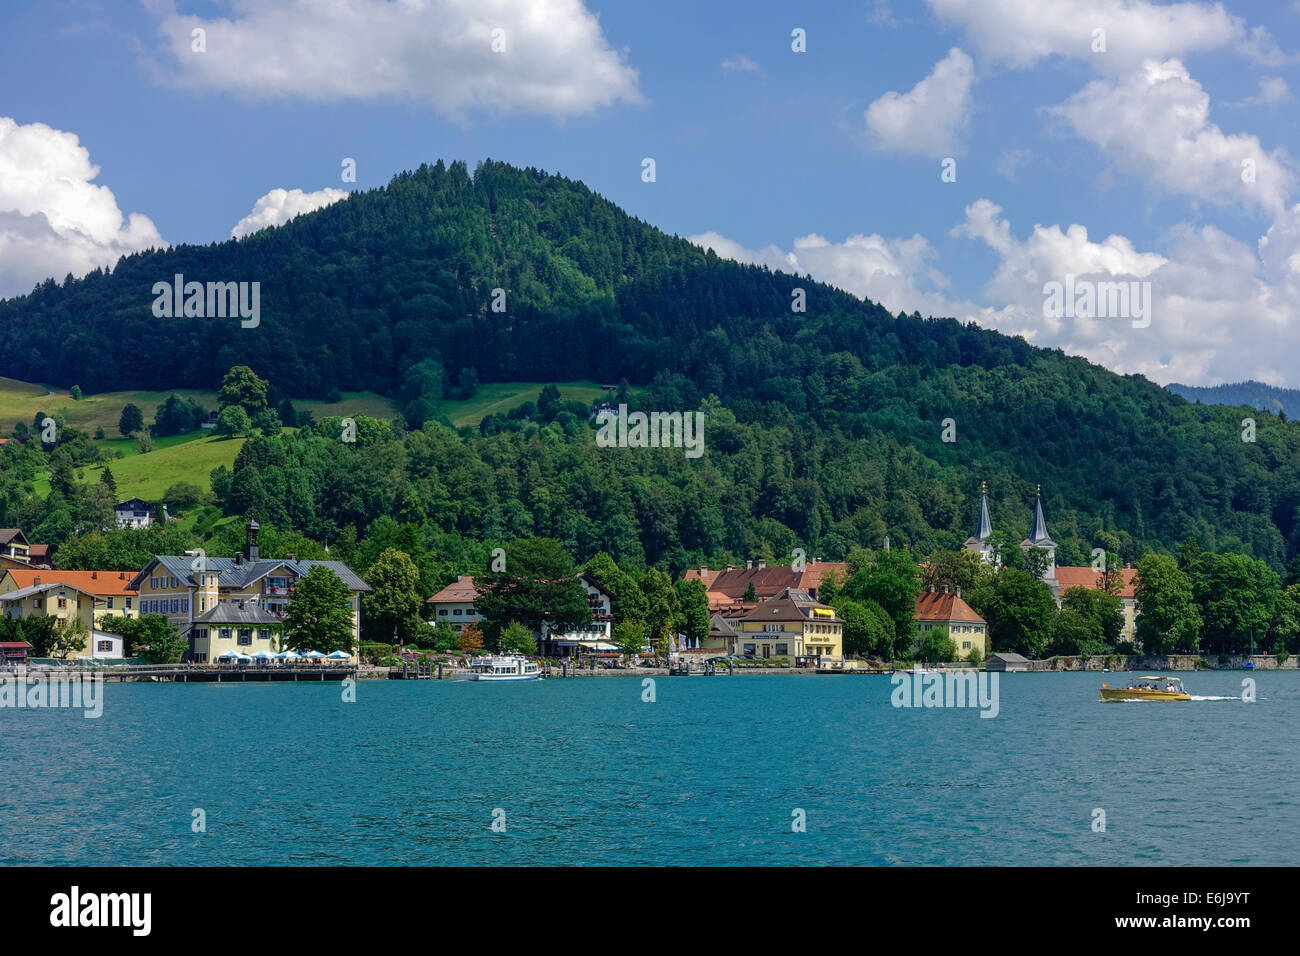 Tegernsee on Lake Tegernsee, Upper Bavaria, germany, Europe Stock Photo